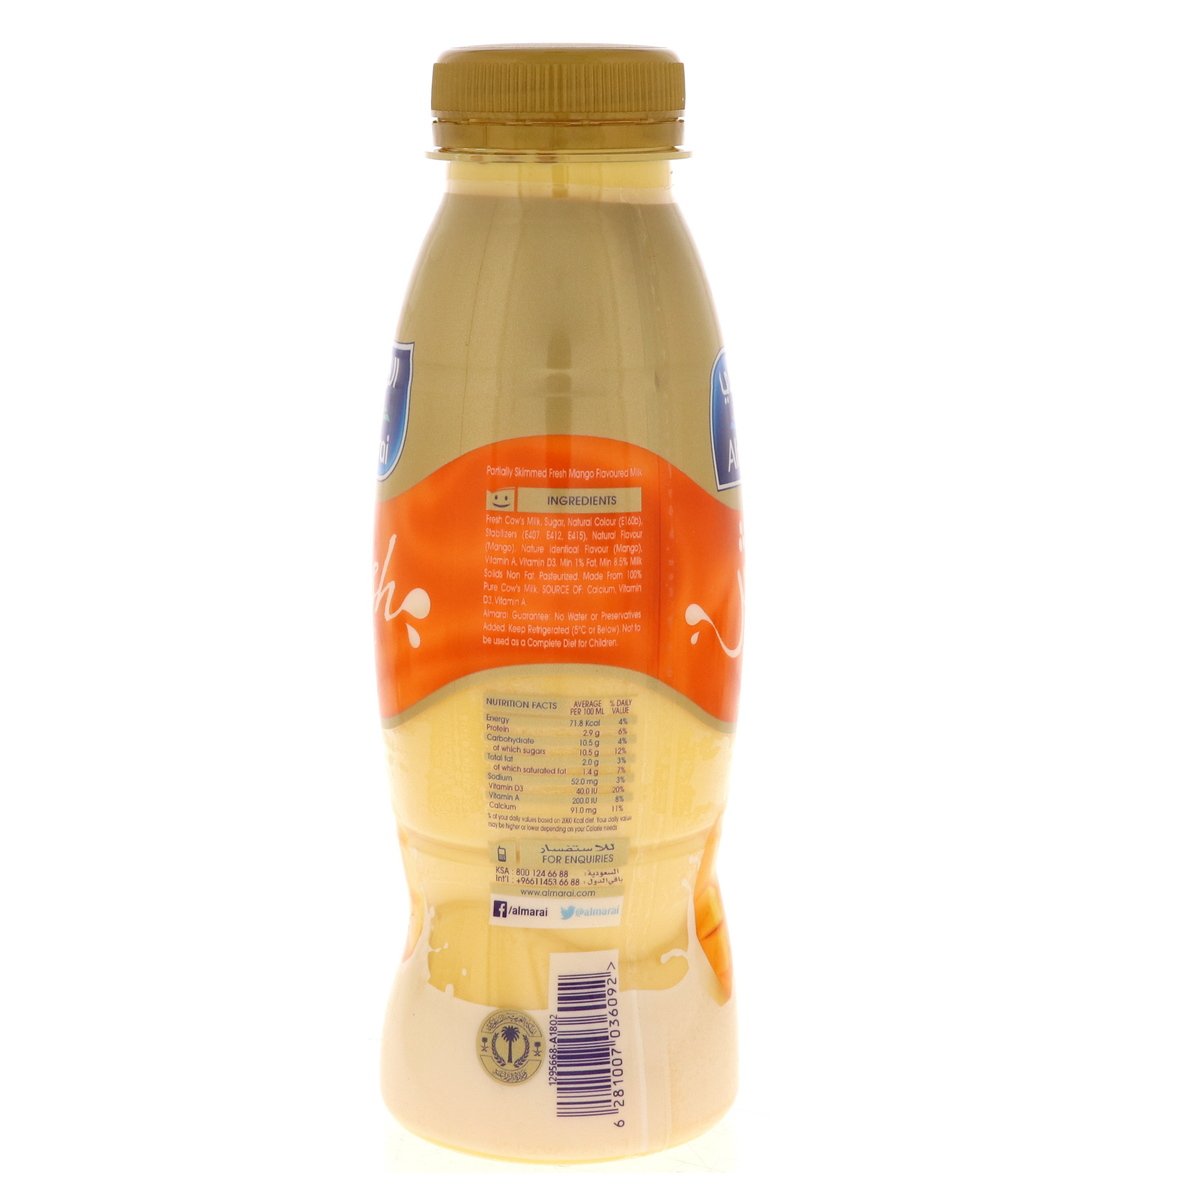 Almarai Mango Flavoured Milk 360 ml